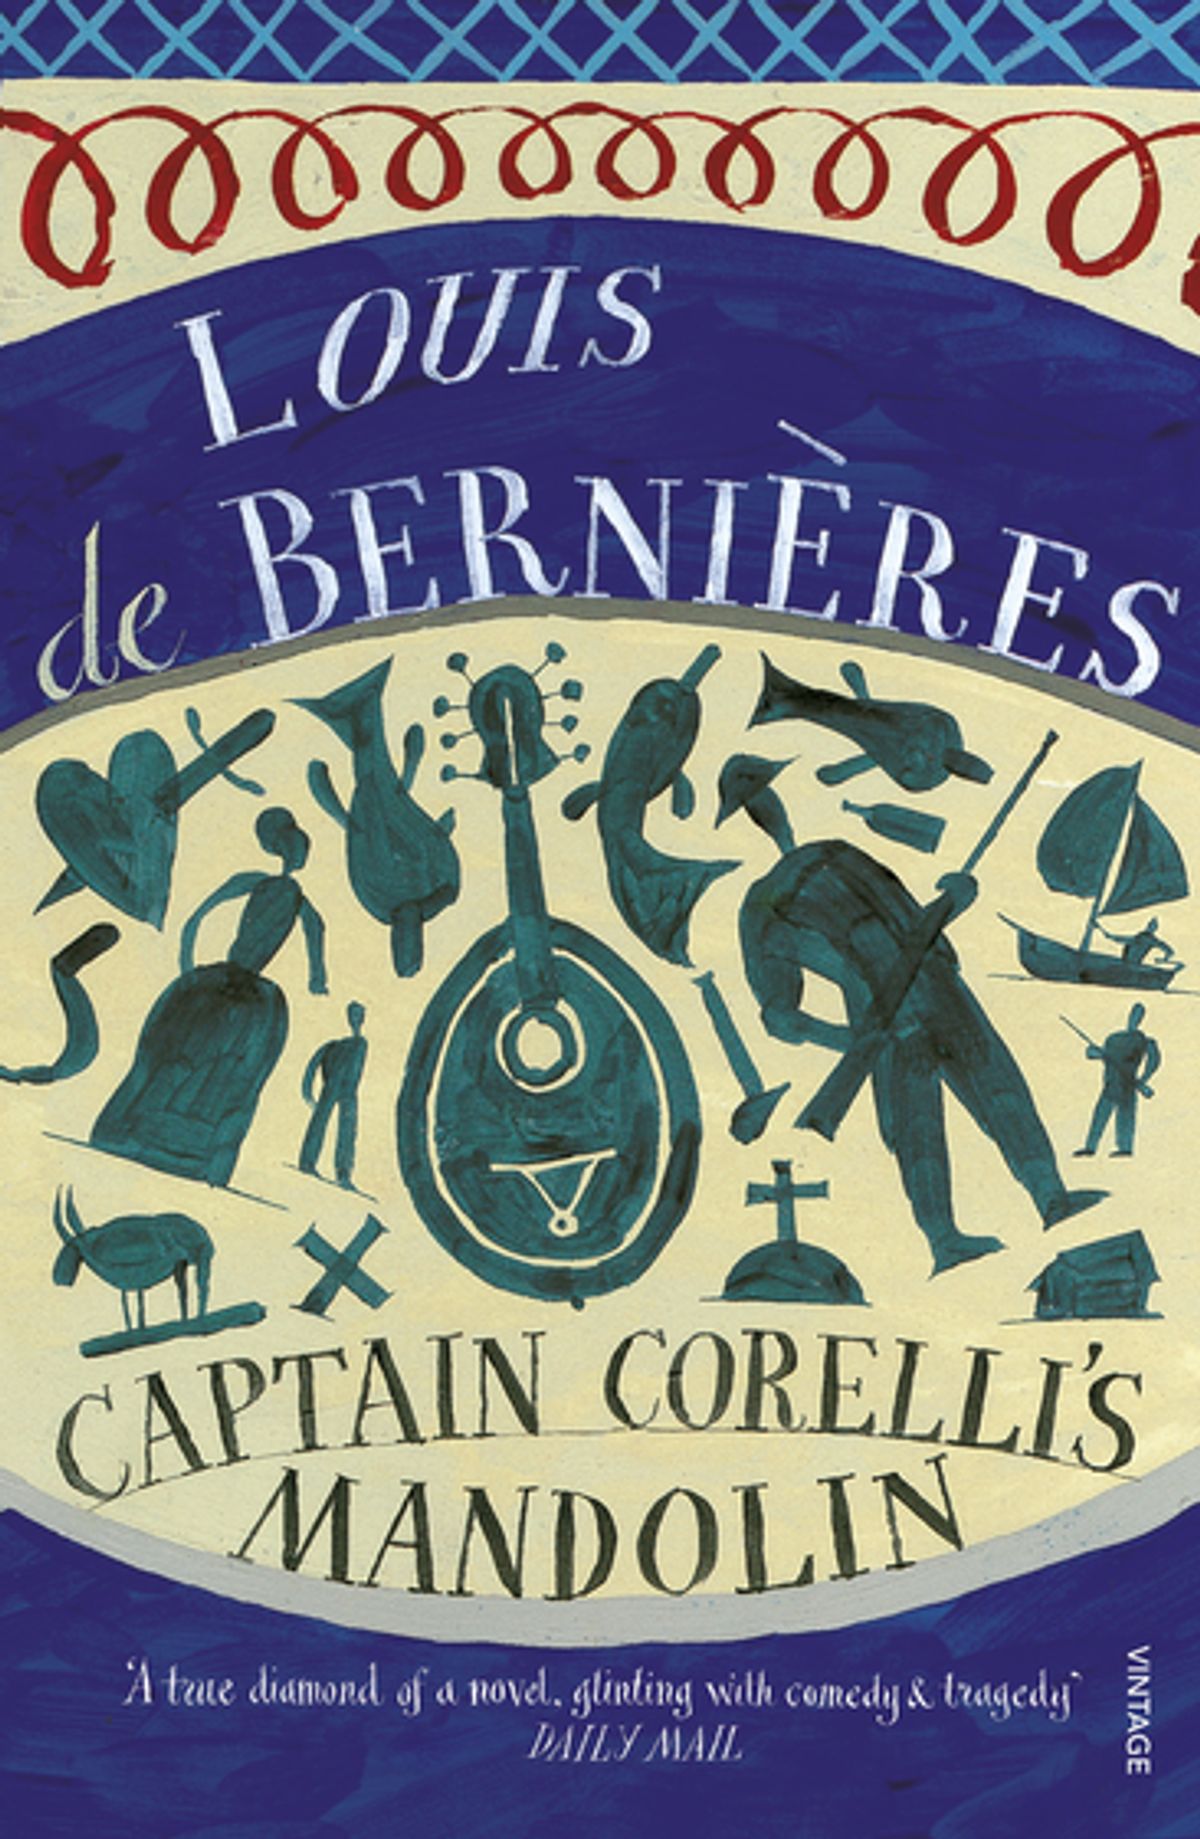 Captain Corelli’s Mandolin by Louis de Bernières